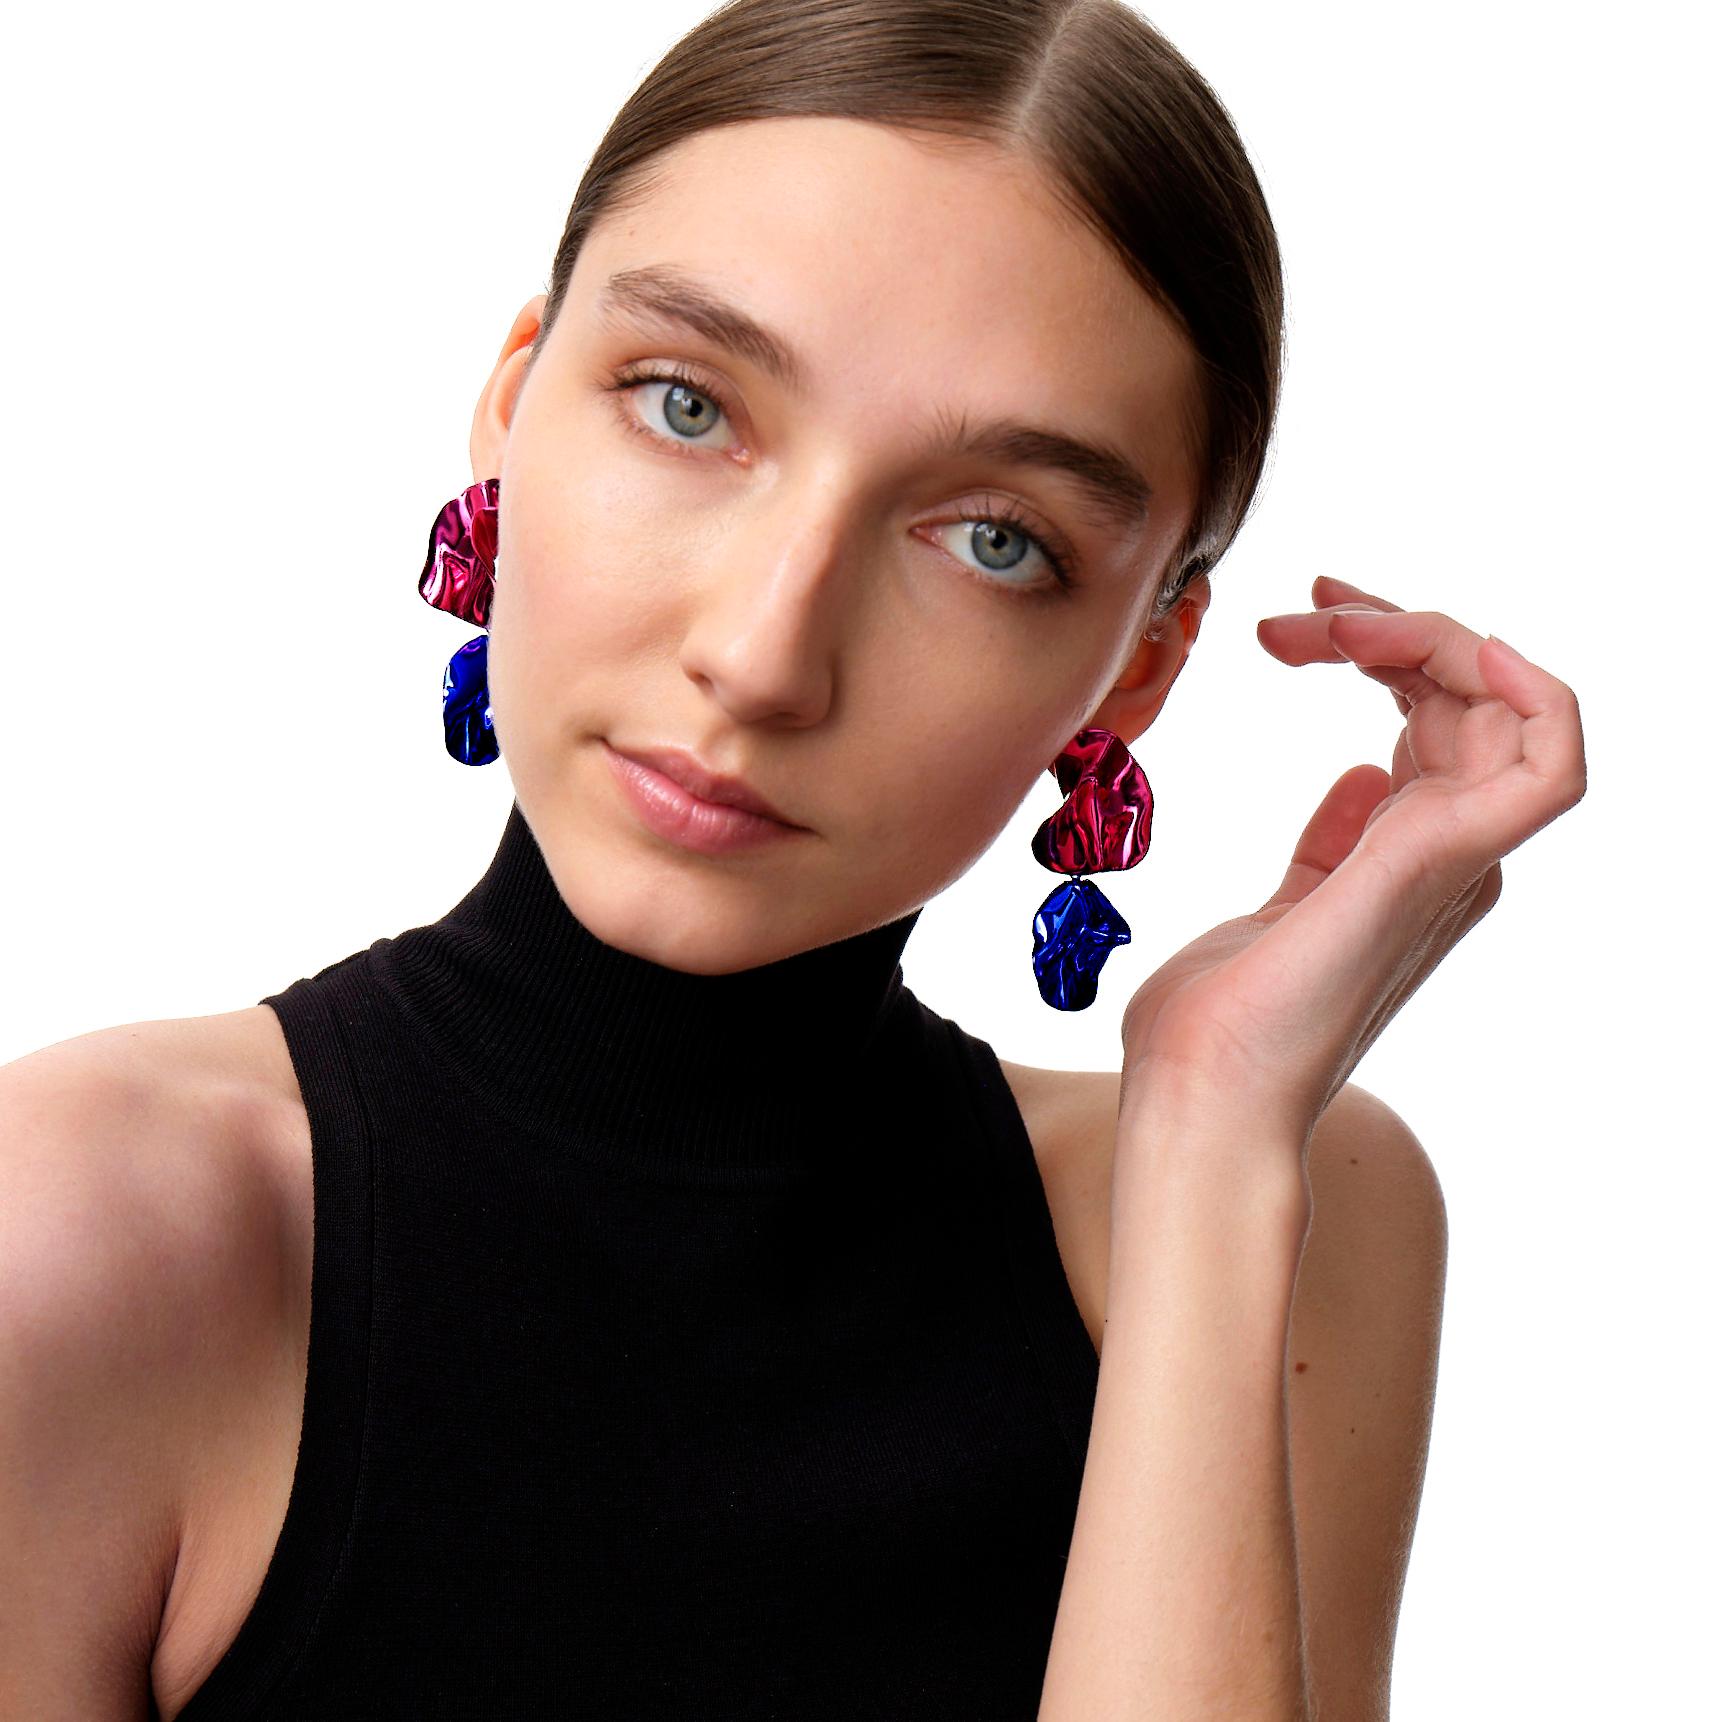 Die Fold Earrings sind skulpturale, gefaltete Ohrringe in leuchtendem Metallic-Fuchsia und Kobaltblau. Ihre filigranen Falten werden durch das hochglanzpolierte Mirror Finish hervorgehoben. Tragen Sie sie in diesem Herbst als Farbakzent.

Keramisch